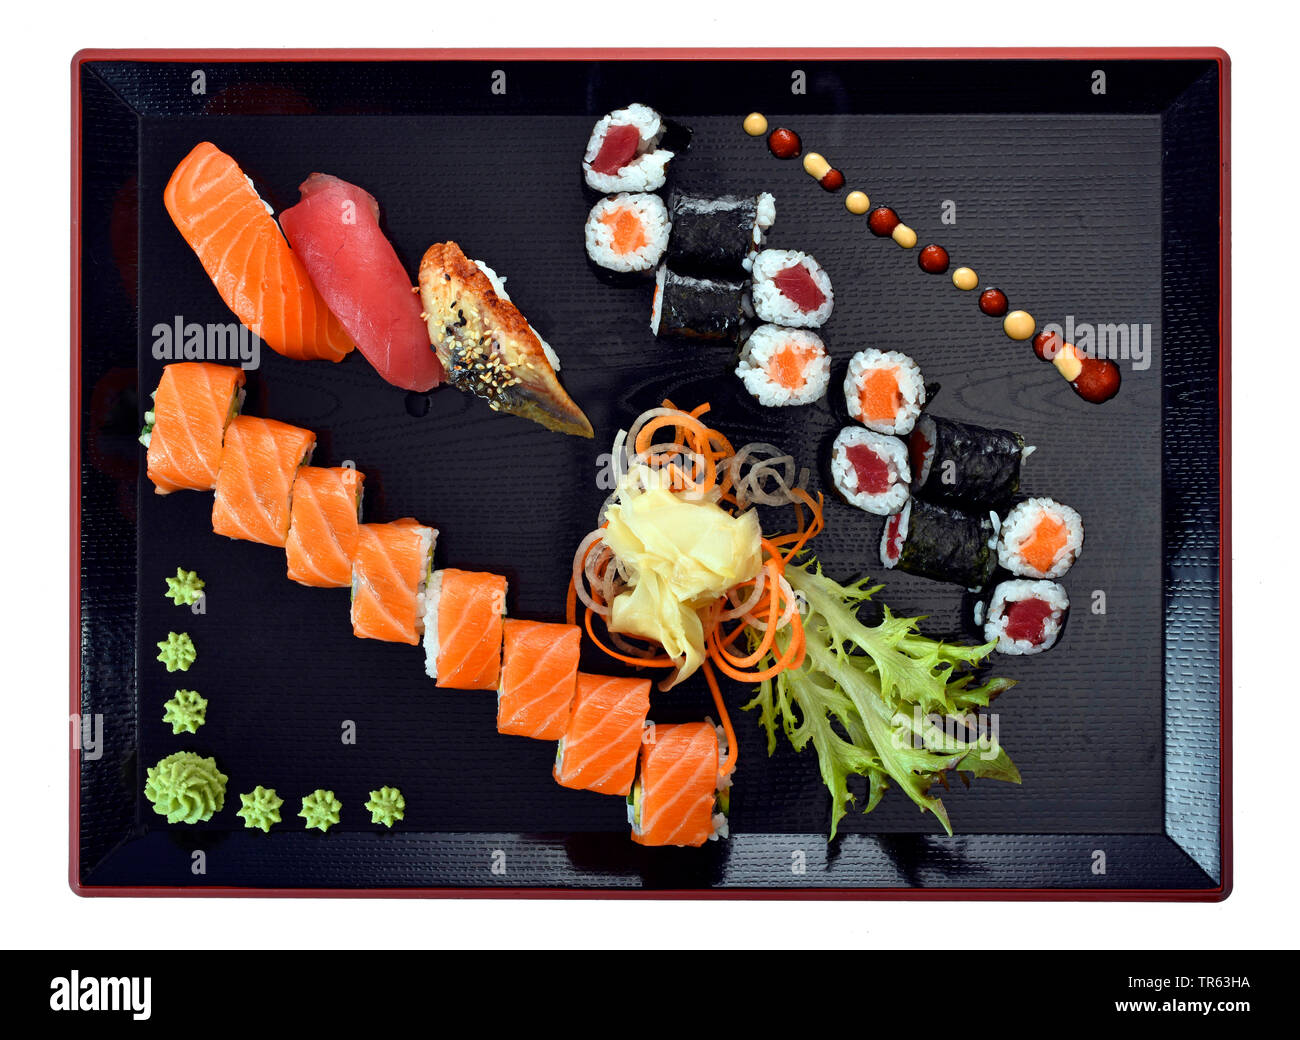 Sushi, Germany Stock Photo